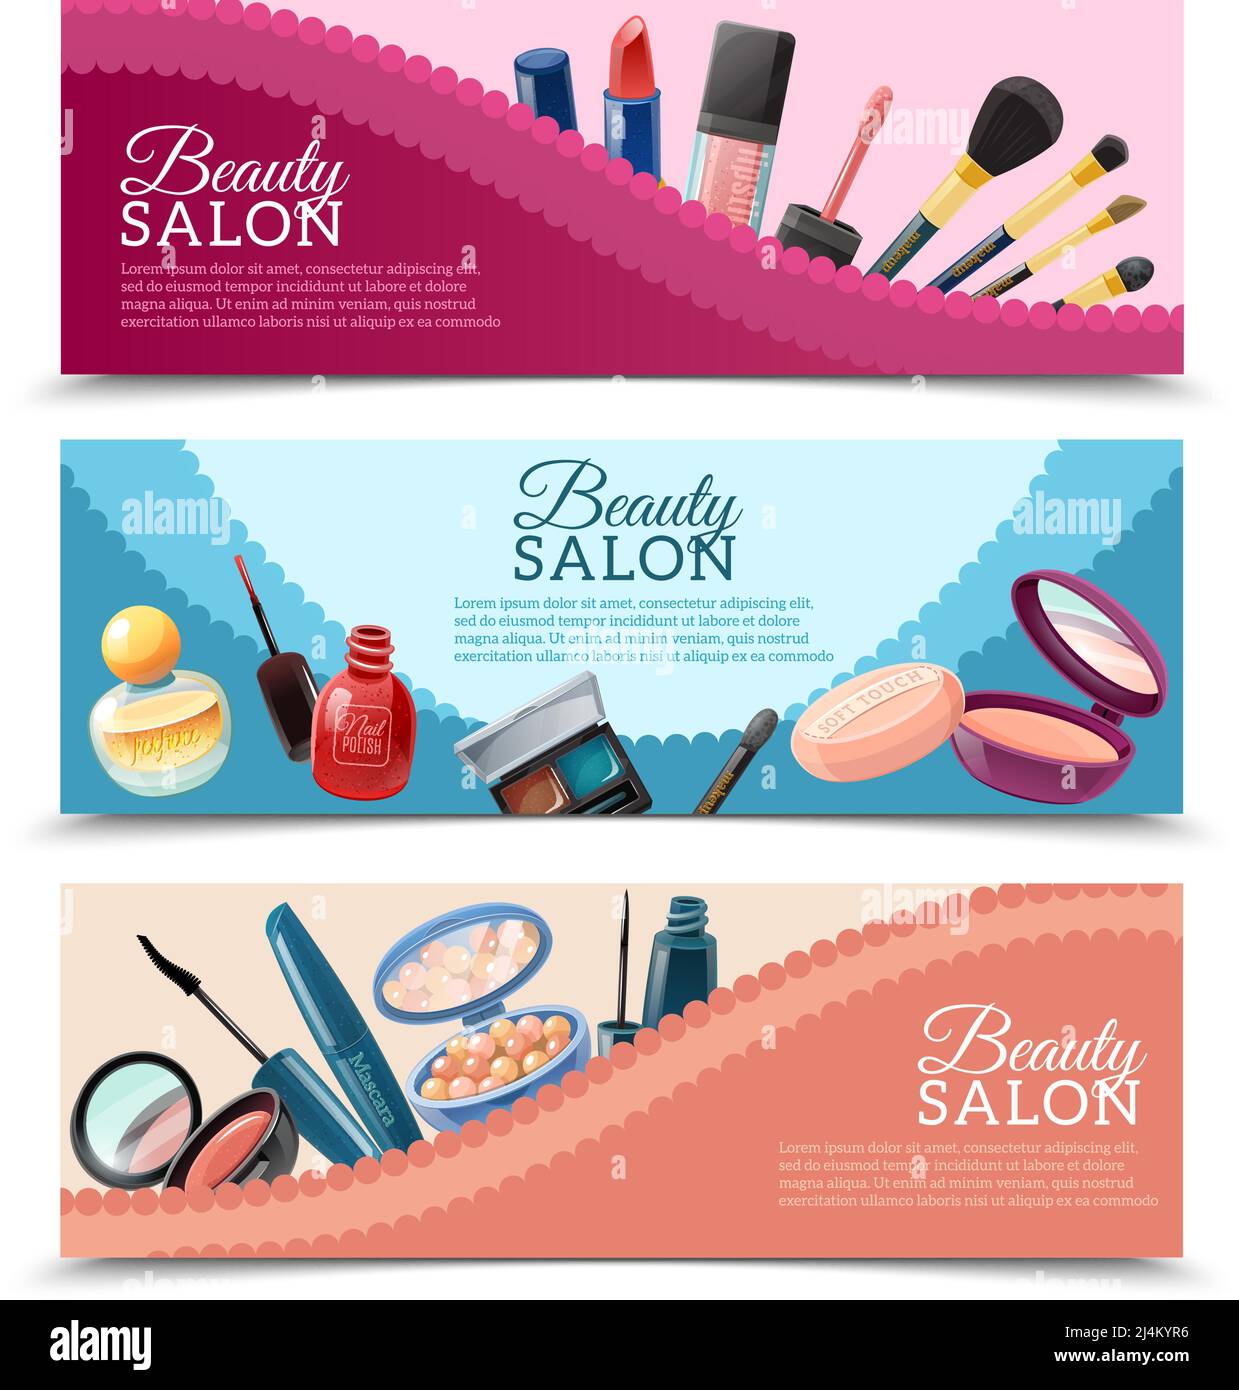 Salon de beauté publicité 3 bannières horizontales ensemble avec cosmétiques et accessoires de maquillage illustration vectorielle isolée réaliste Illustration de Vecteur